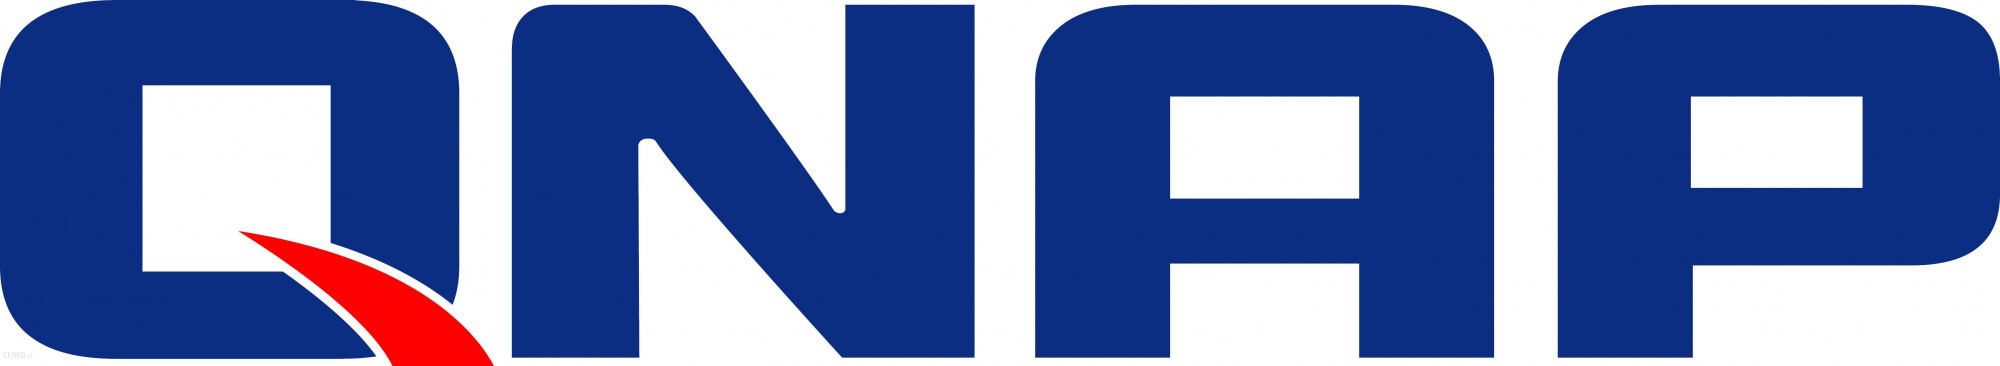 QNAP логотип